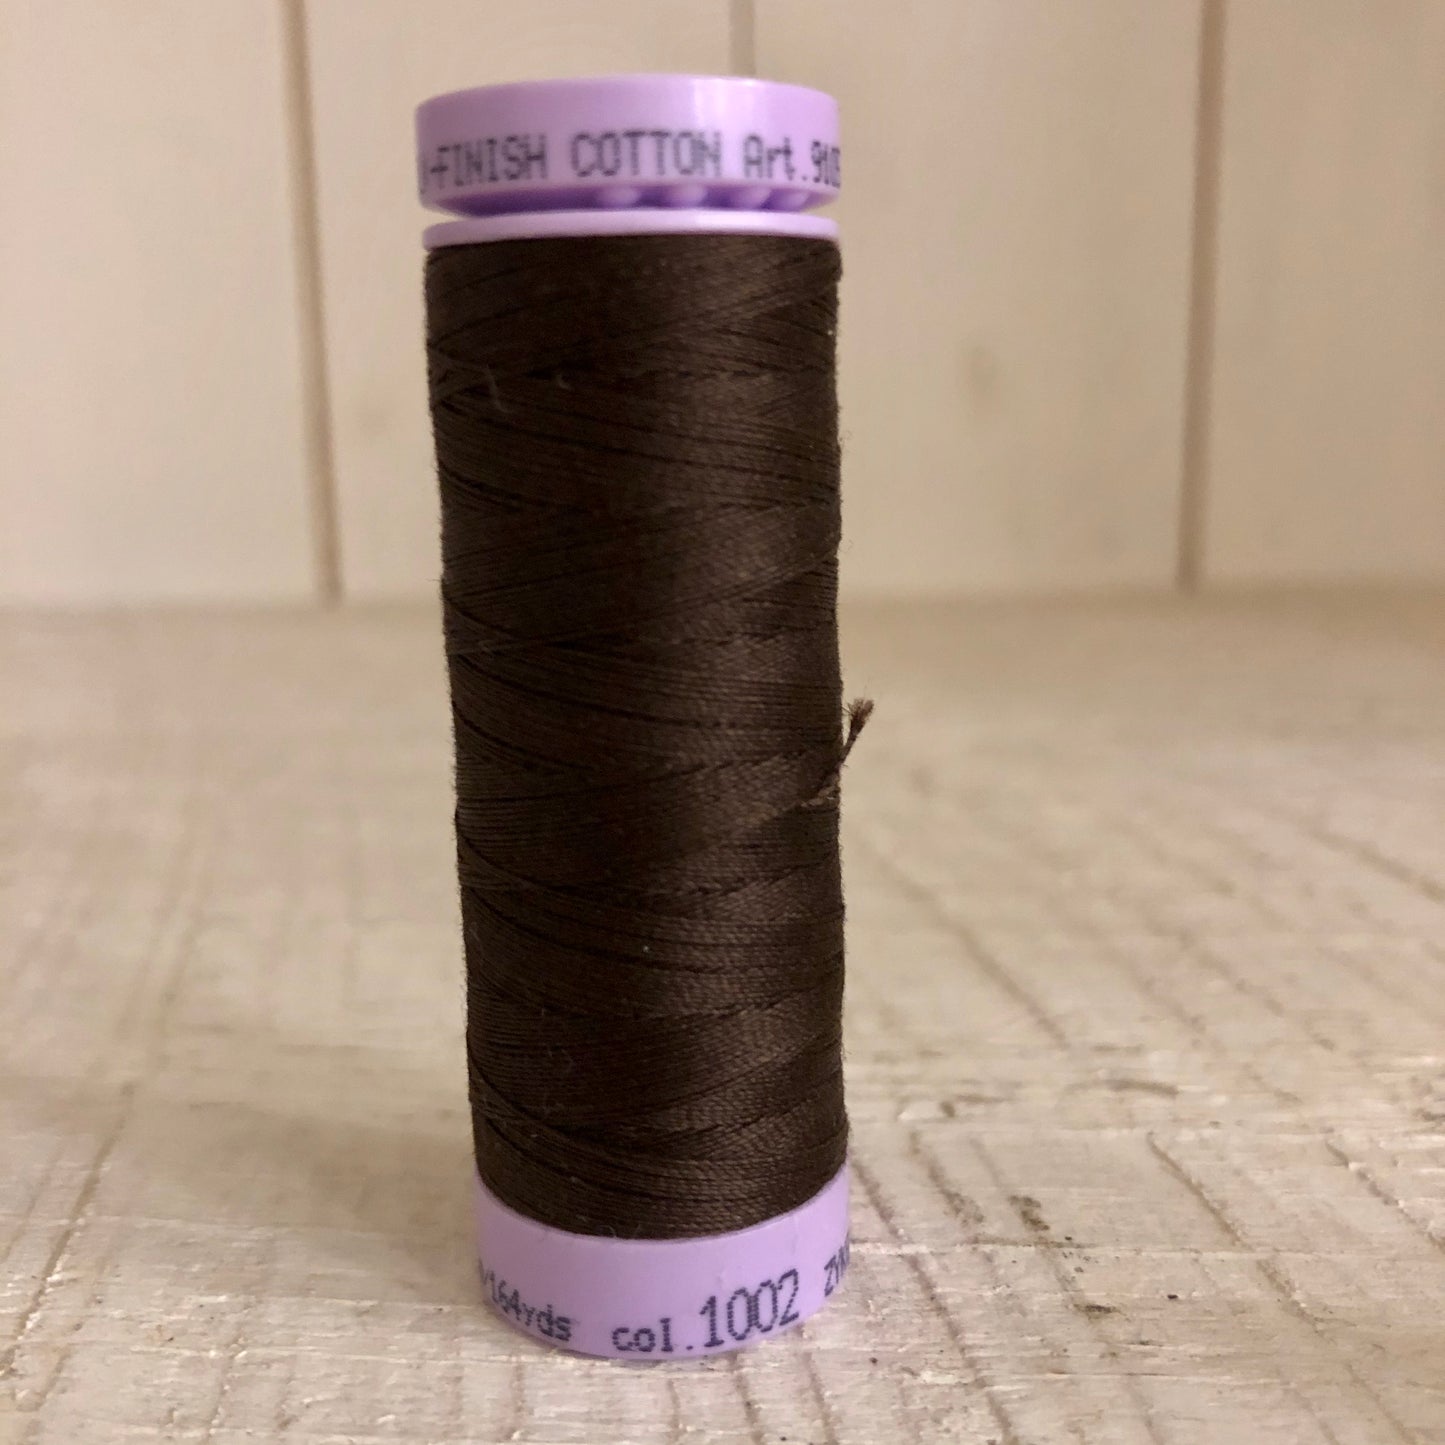 Mettler Silk Finish Cotton Thread, Dark Brown 1002, 150 meter Spool